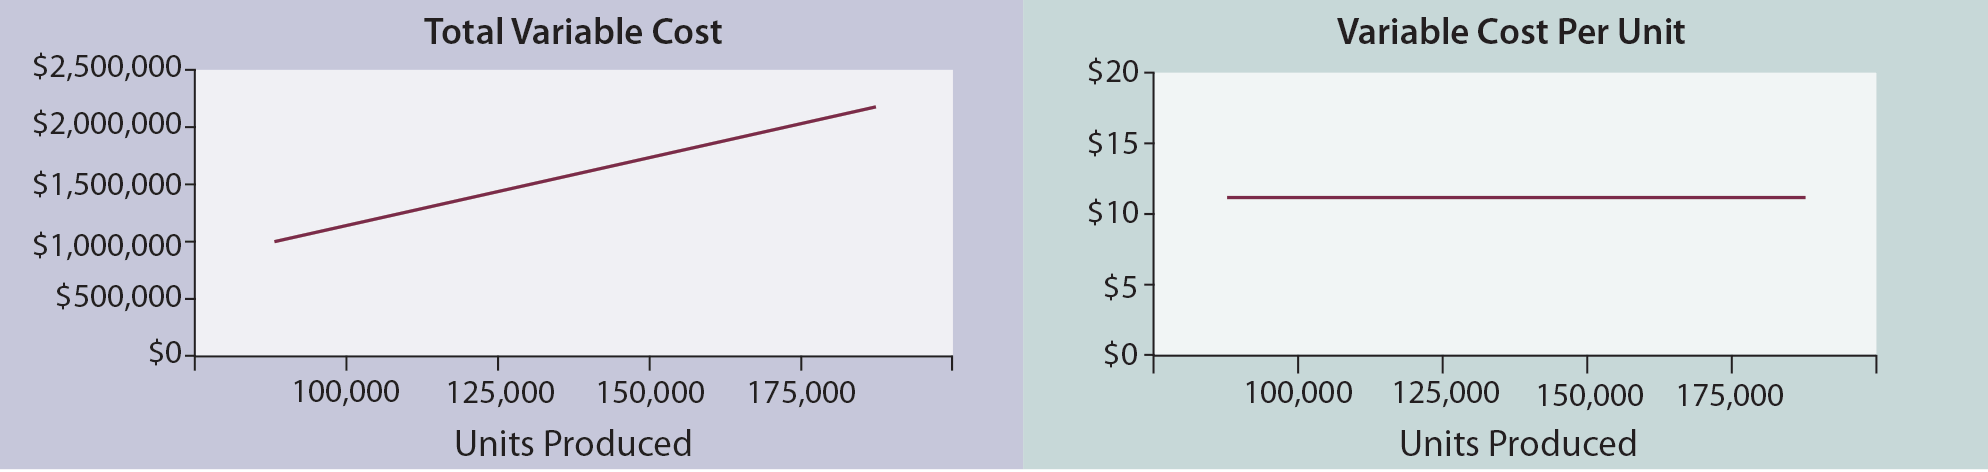 Cost Behavior - Variable Cost Comparison